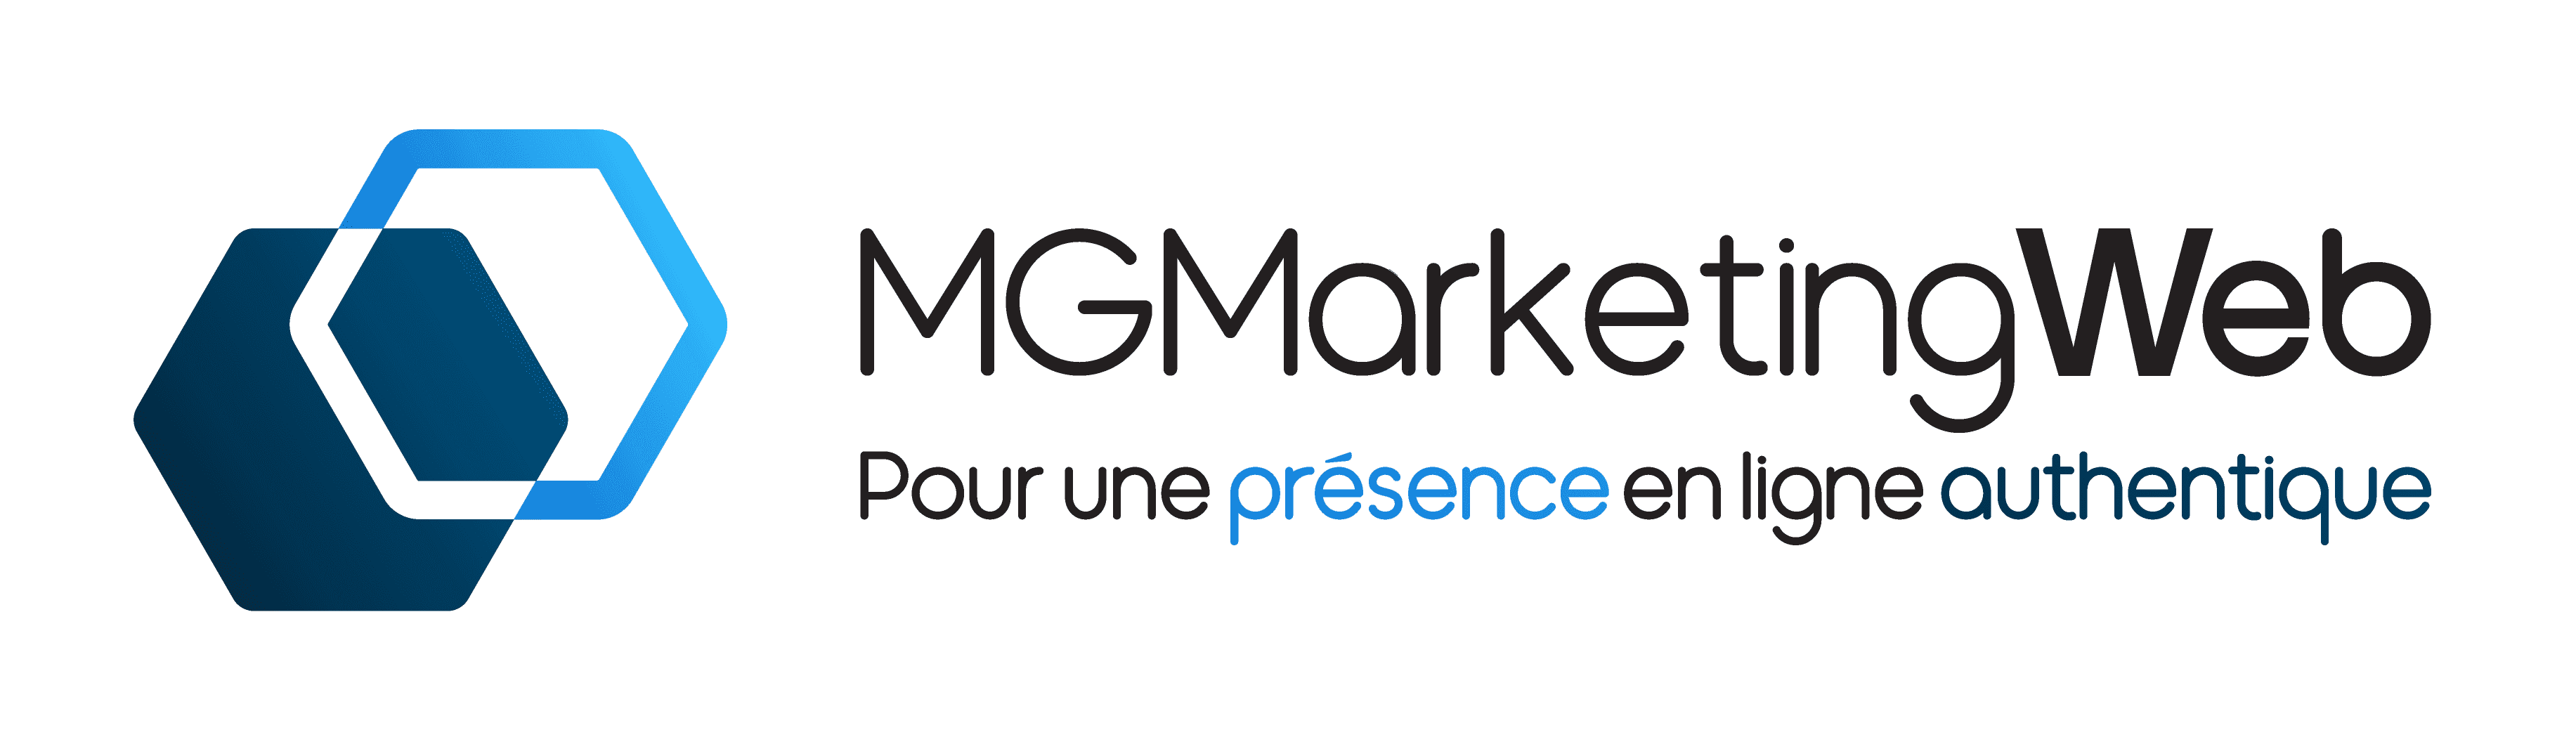 Logo - MG Marketing Web - Pour une présence en ligne authentique